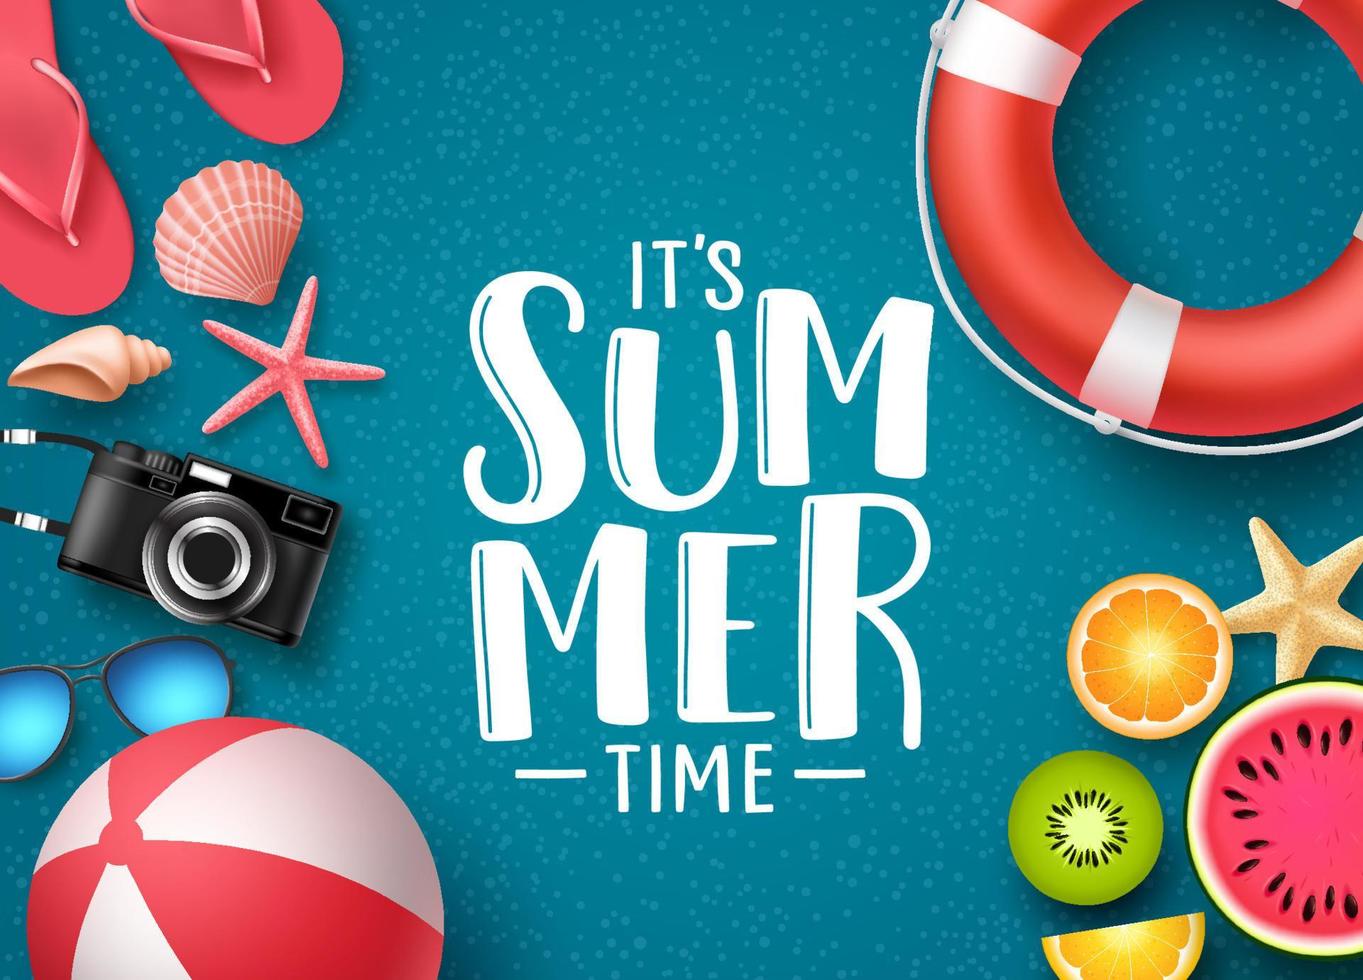 é o design de banner de vetor de horário de verão com texto e elementos de verão, como bola de praia, conchas e frutas em plano de fundo texturizado azul. ilustração vetorial.